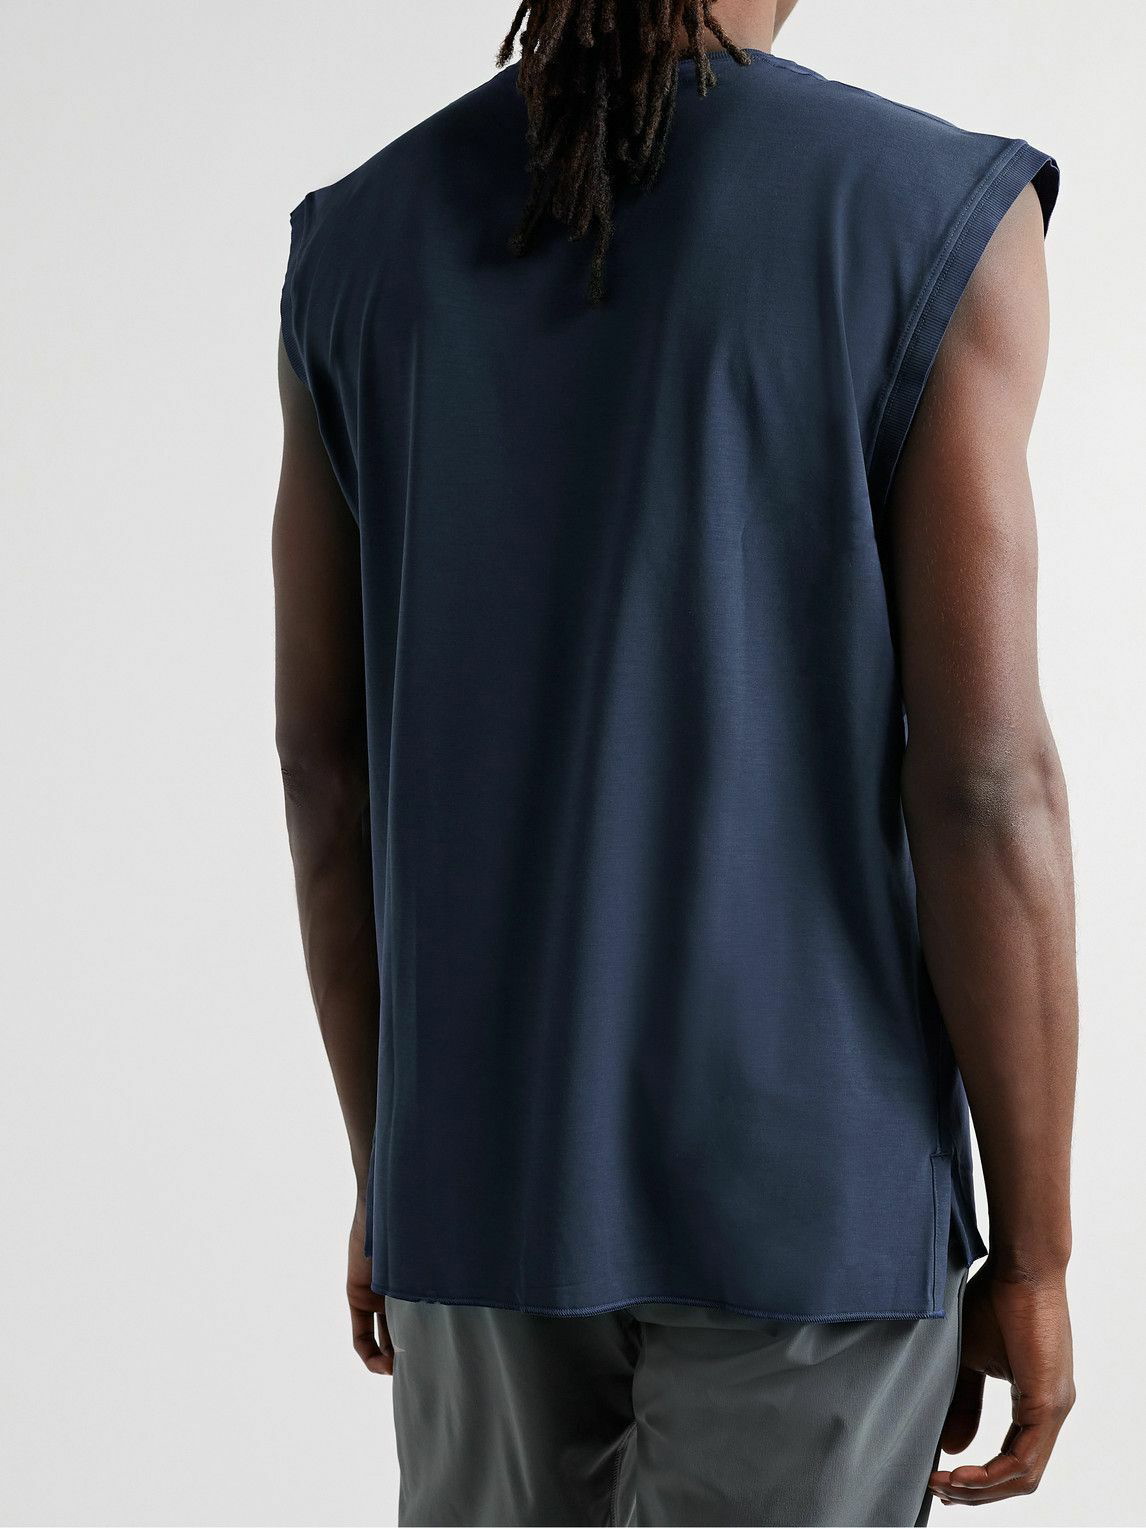 Nike Yoga Dri Fit Sleeveless T-Shirt Black